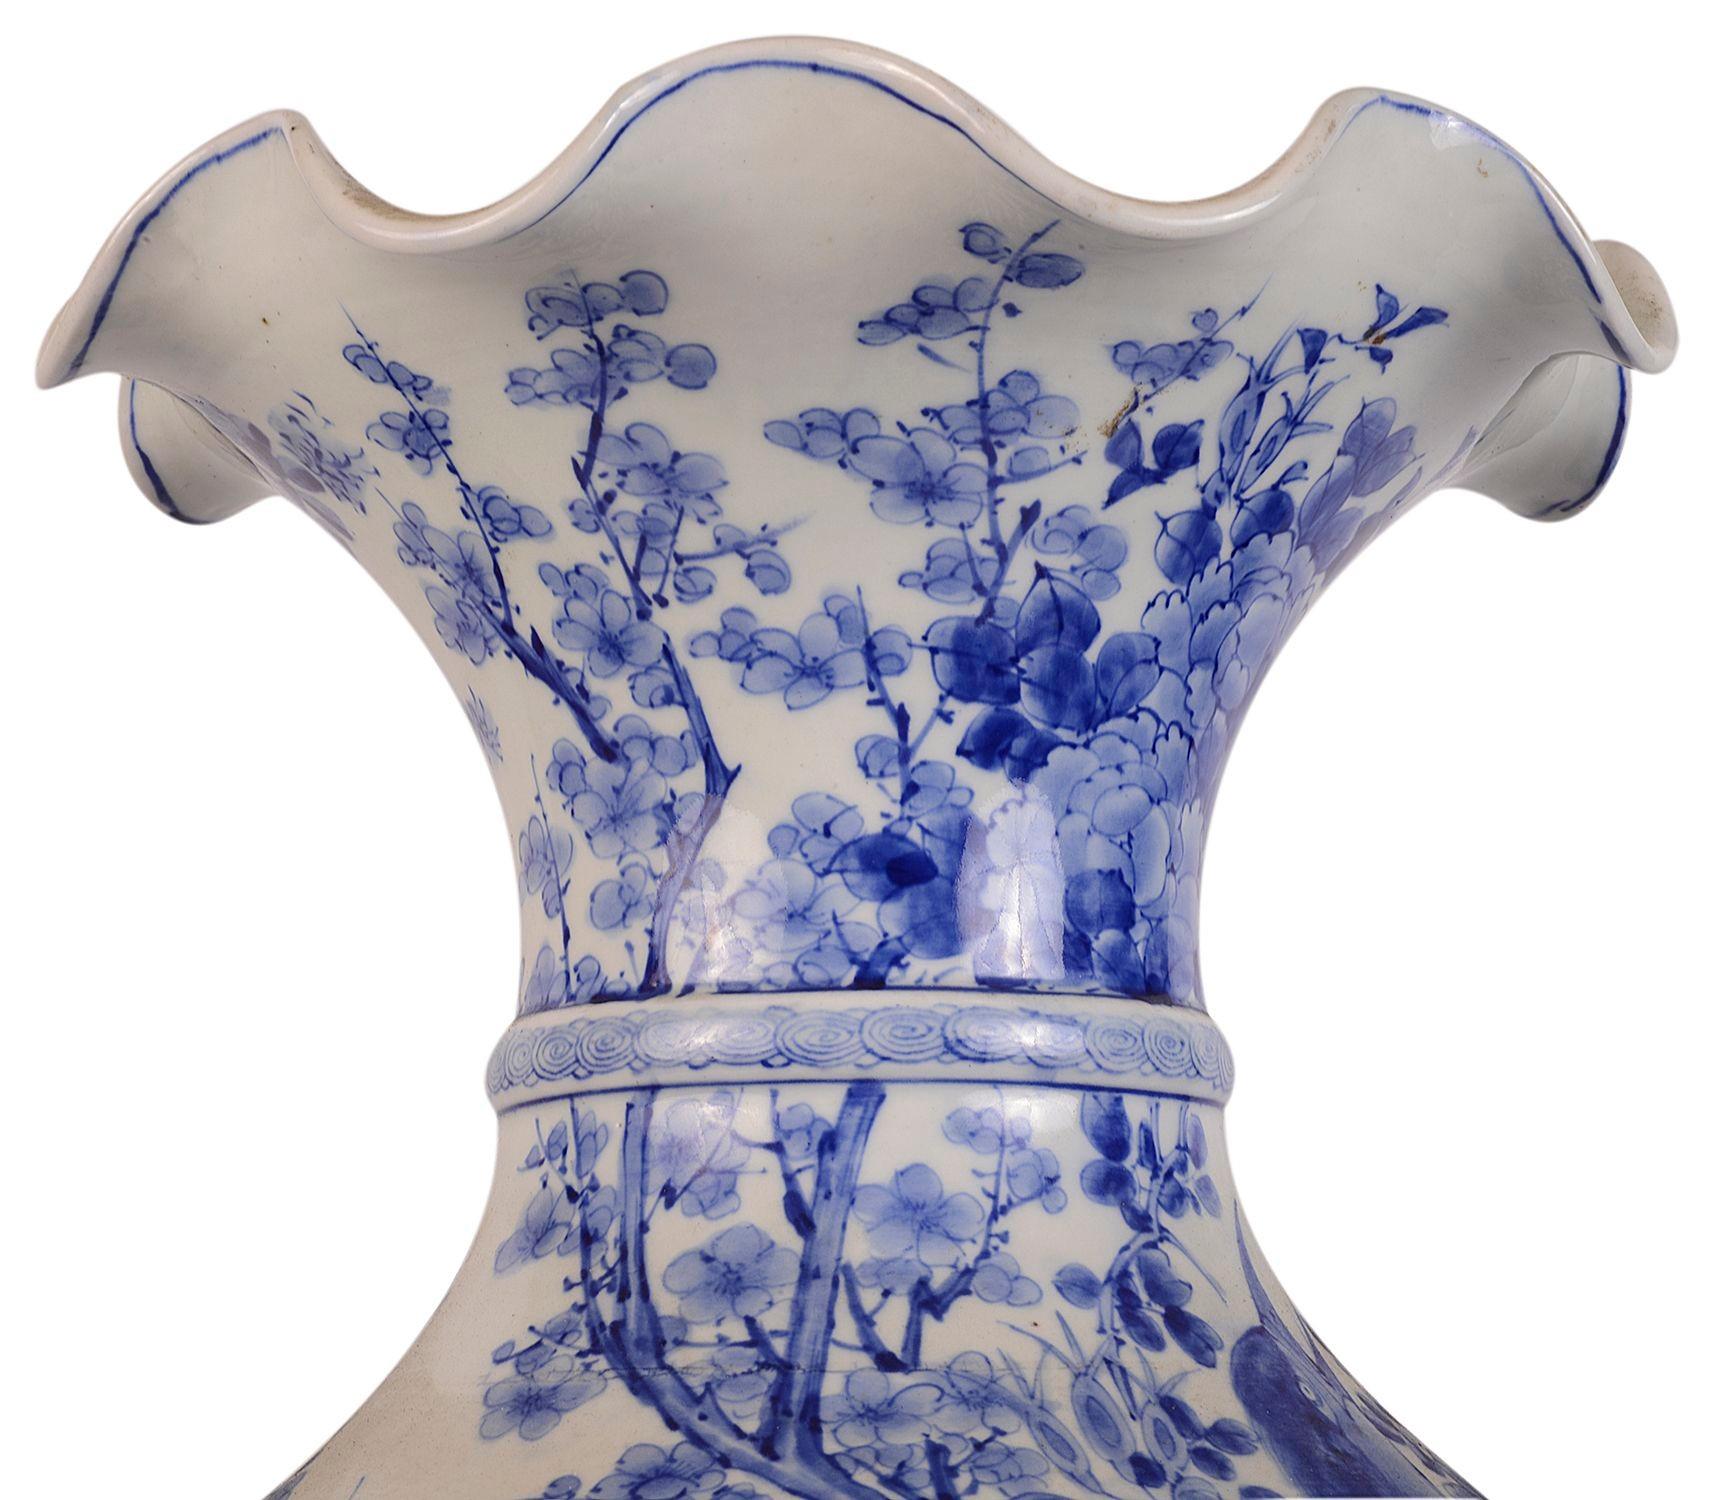 Eine sehr beeindruckende, gute Qualität, Ende des 19. Jahrhunderts japanischen Blau-Weiß-Drachen Vase, mit einem ausgestellten Hals, wunderbare blaue Hand gemalten Blumenschmuck, mit dem erhobenen Drachen um die Vase gewickelt, die Basis mit einem